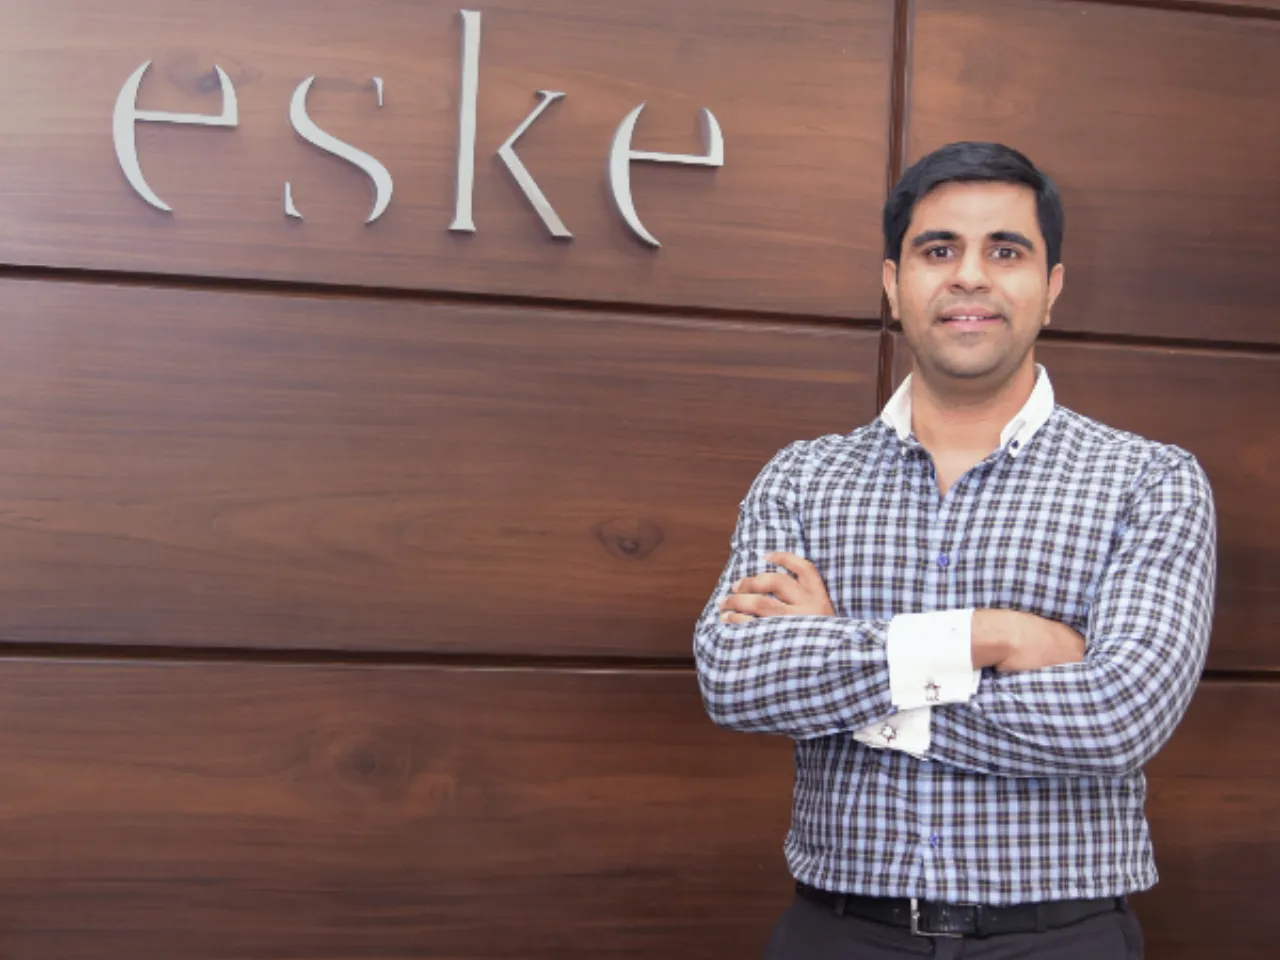 D2C lifestyle brand eské raises $1.5M led by Cyrus Mistry-founded Mistry Ventures